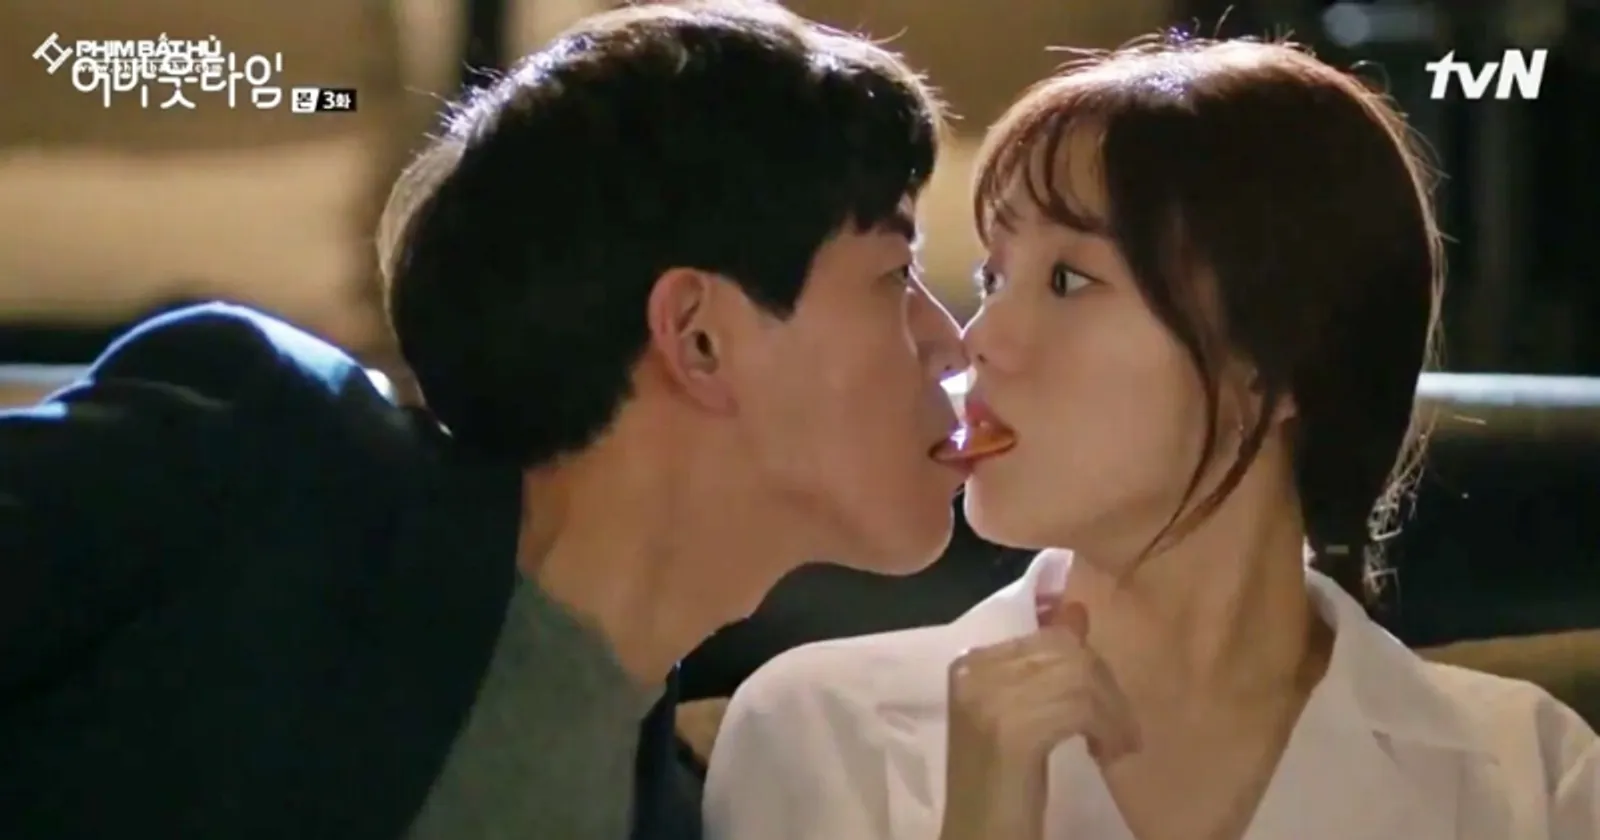 7 Jenis Ciuman dalam Drama Korea, Bisa Jadi Referensi Pasangan!